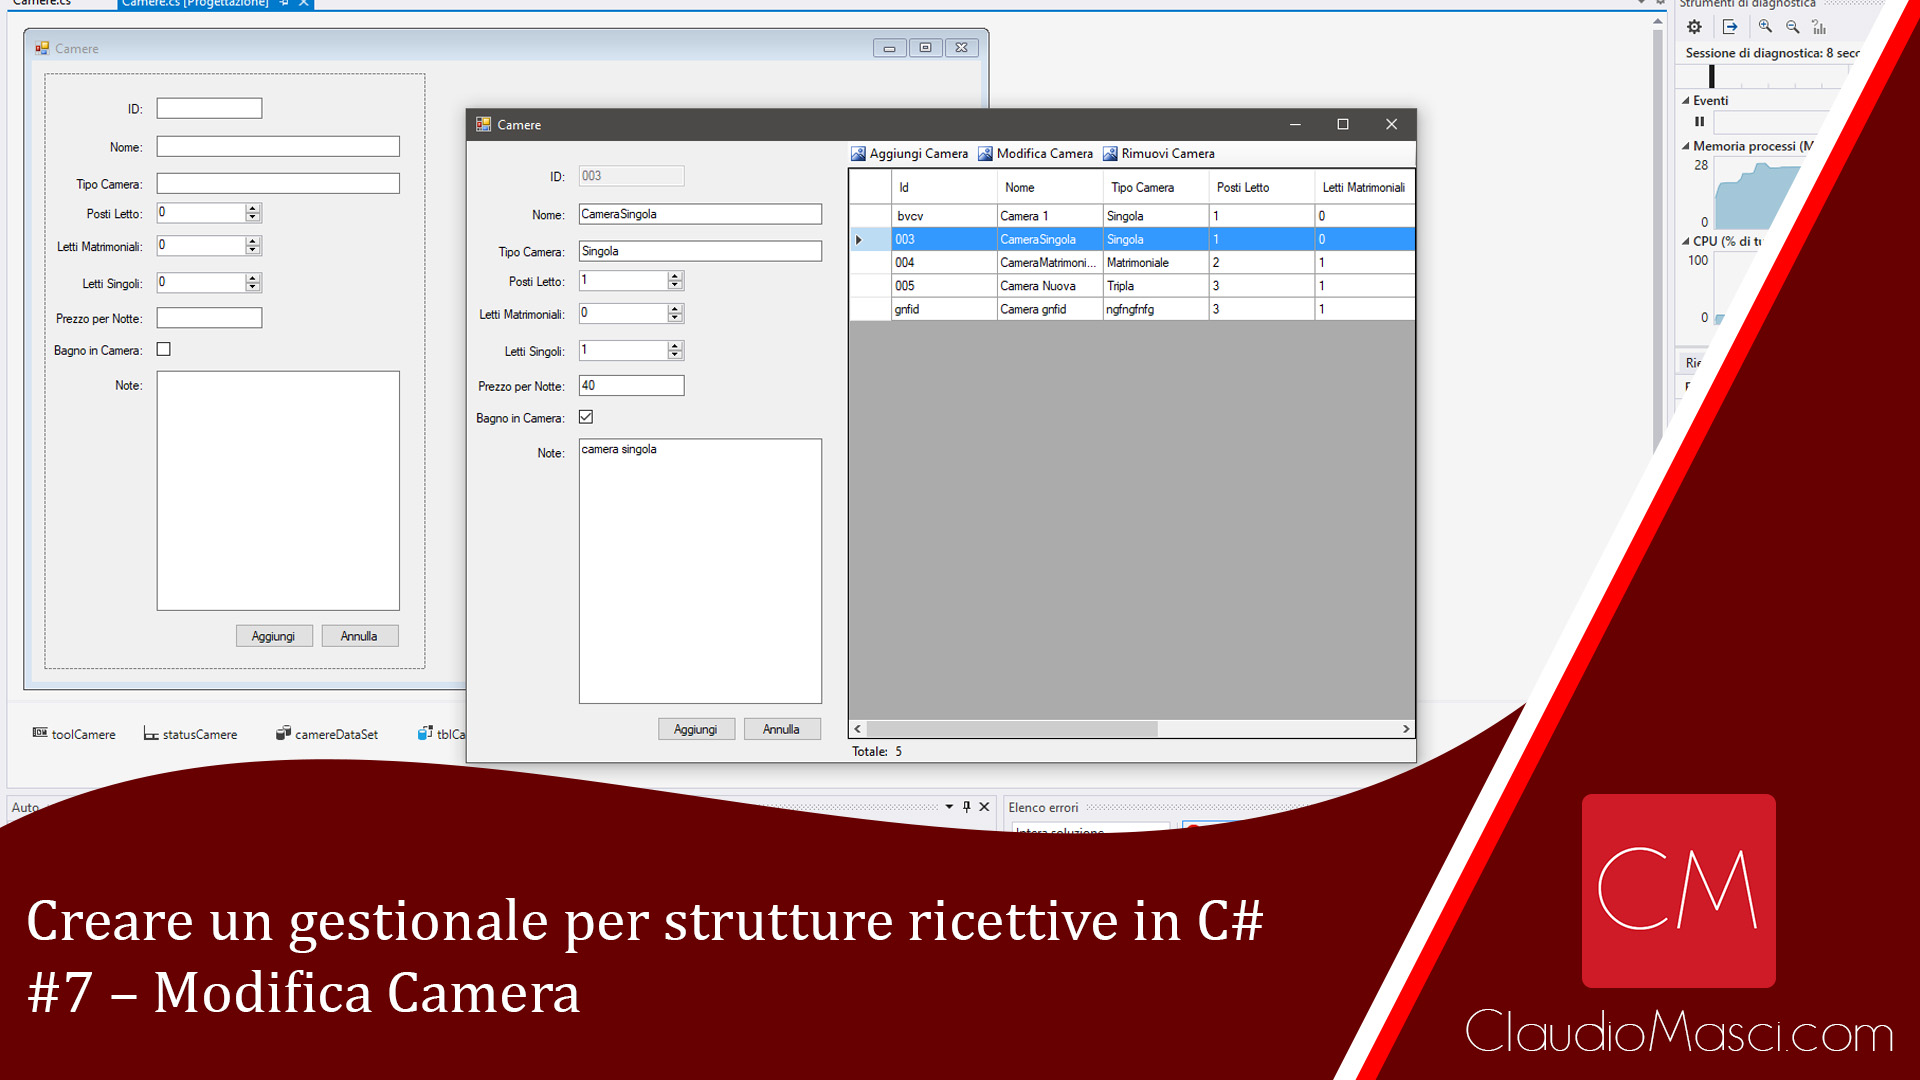 Creare un gestionale per strutture ricettive in C# – #7 – Modifica Camera